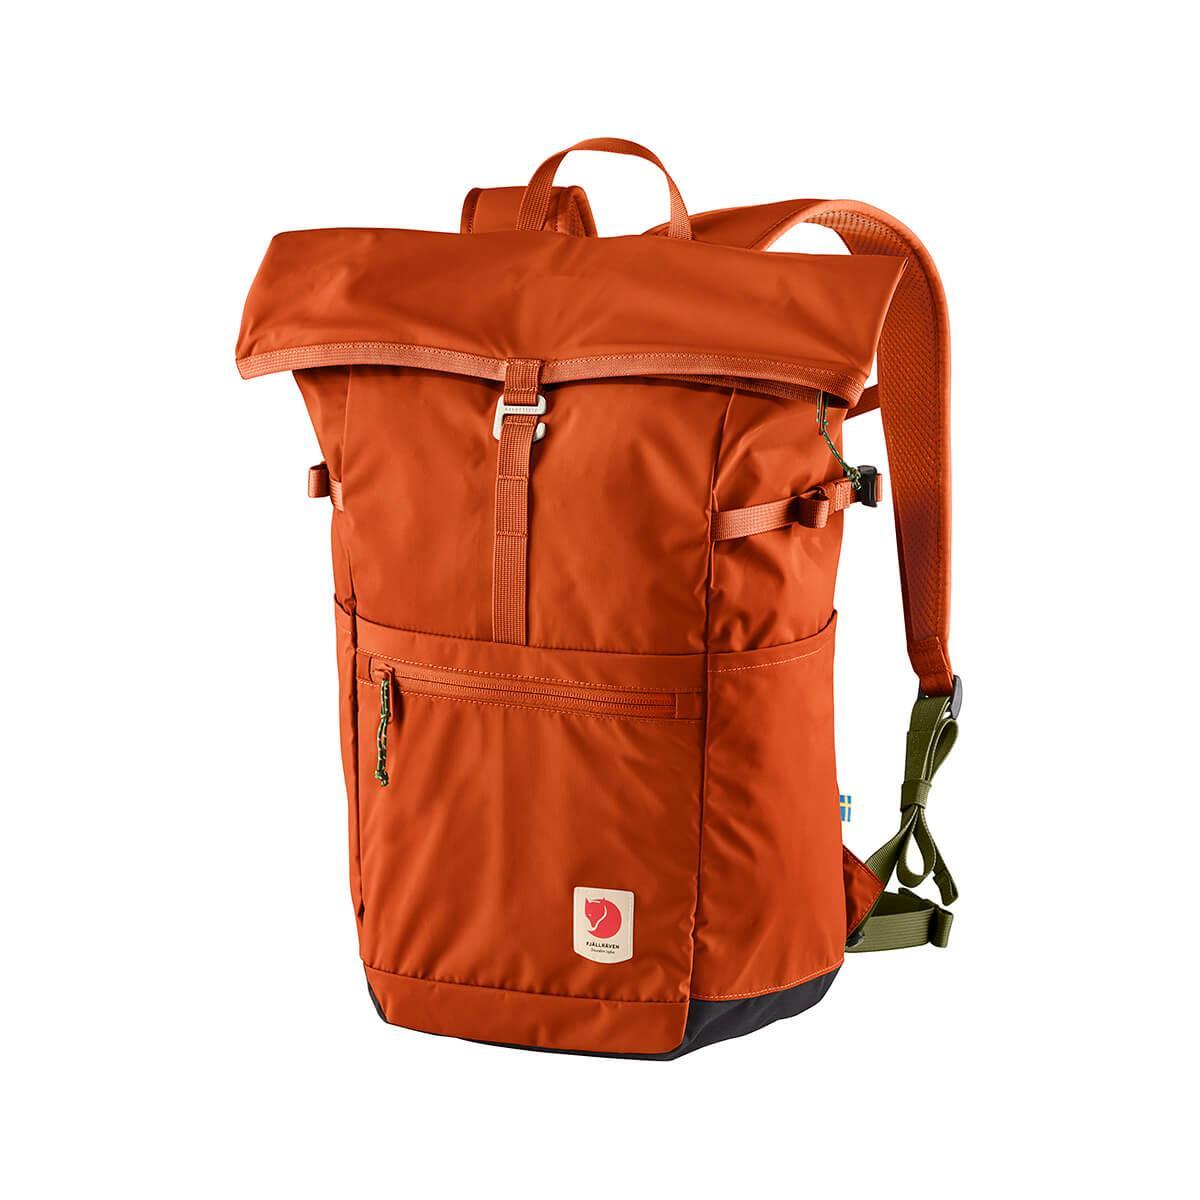  High Coast Foldsack Backpack - 24 Liter